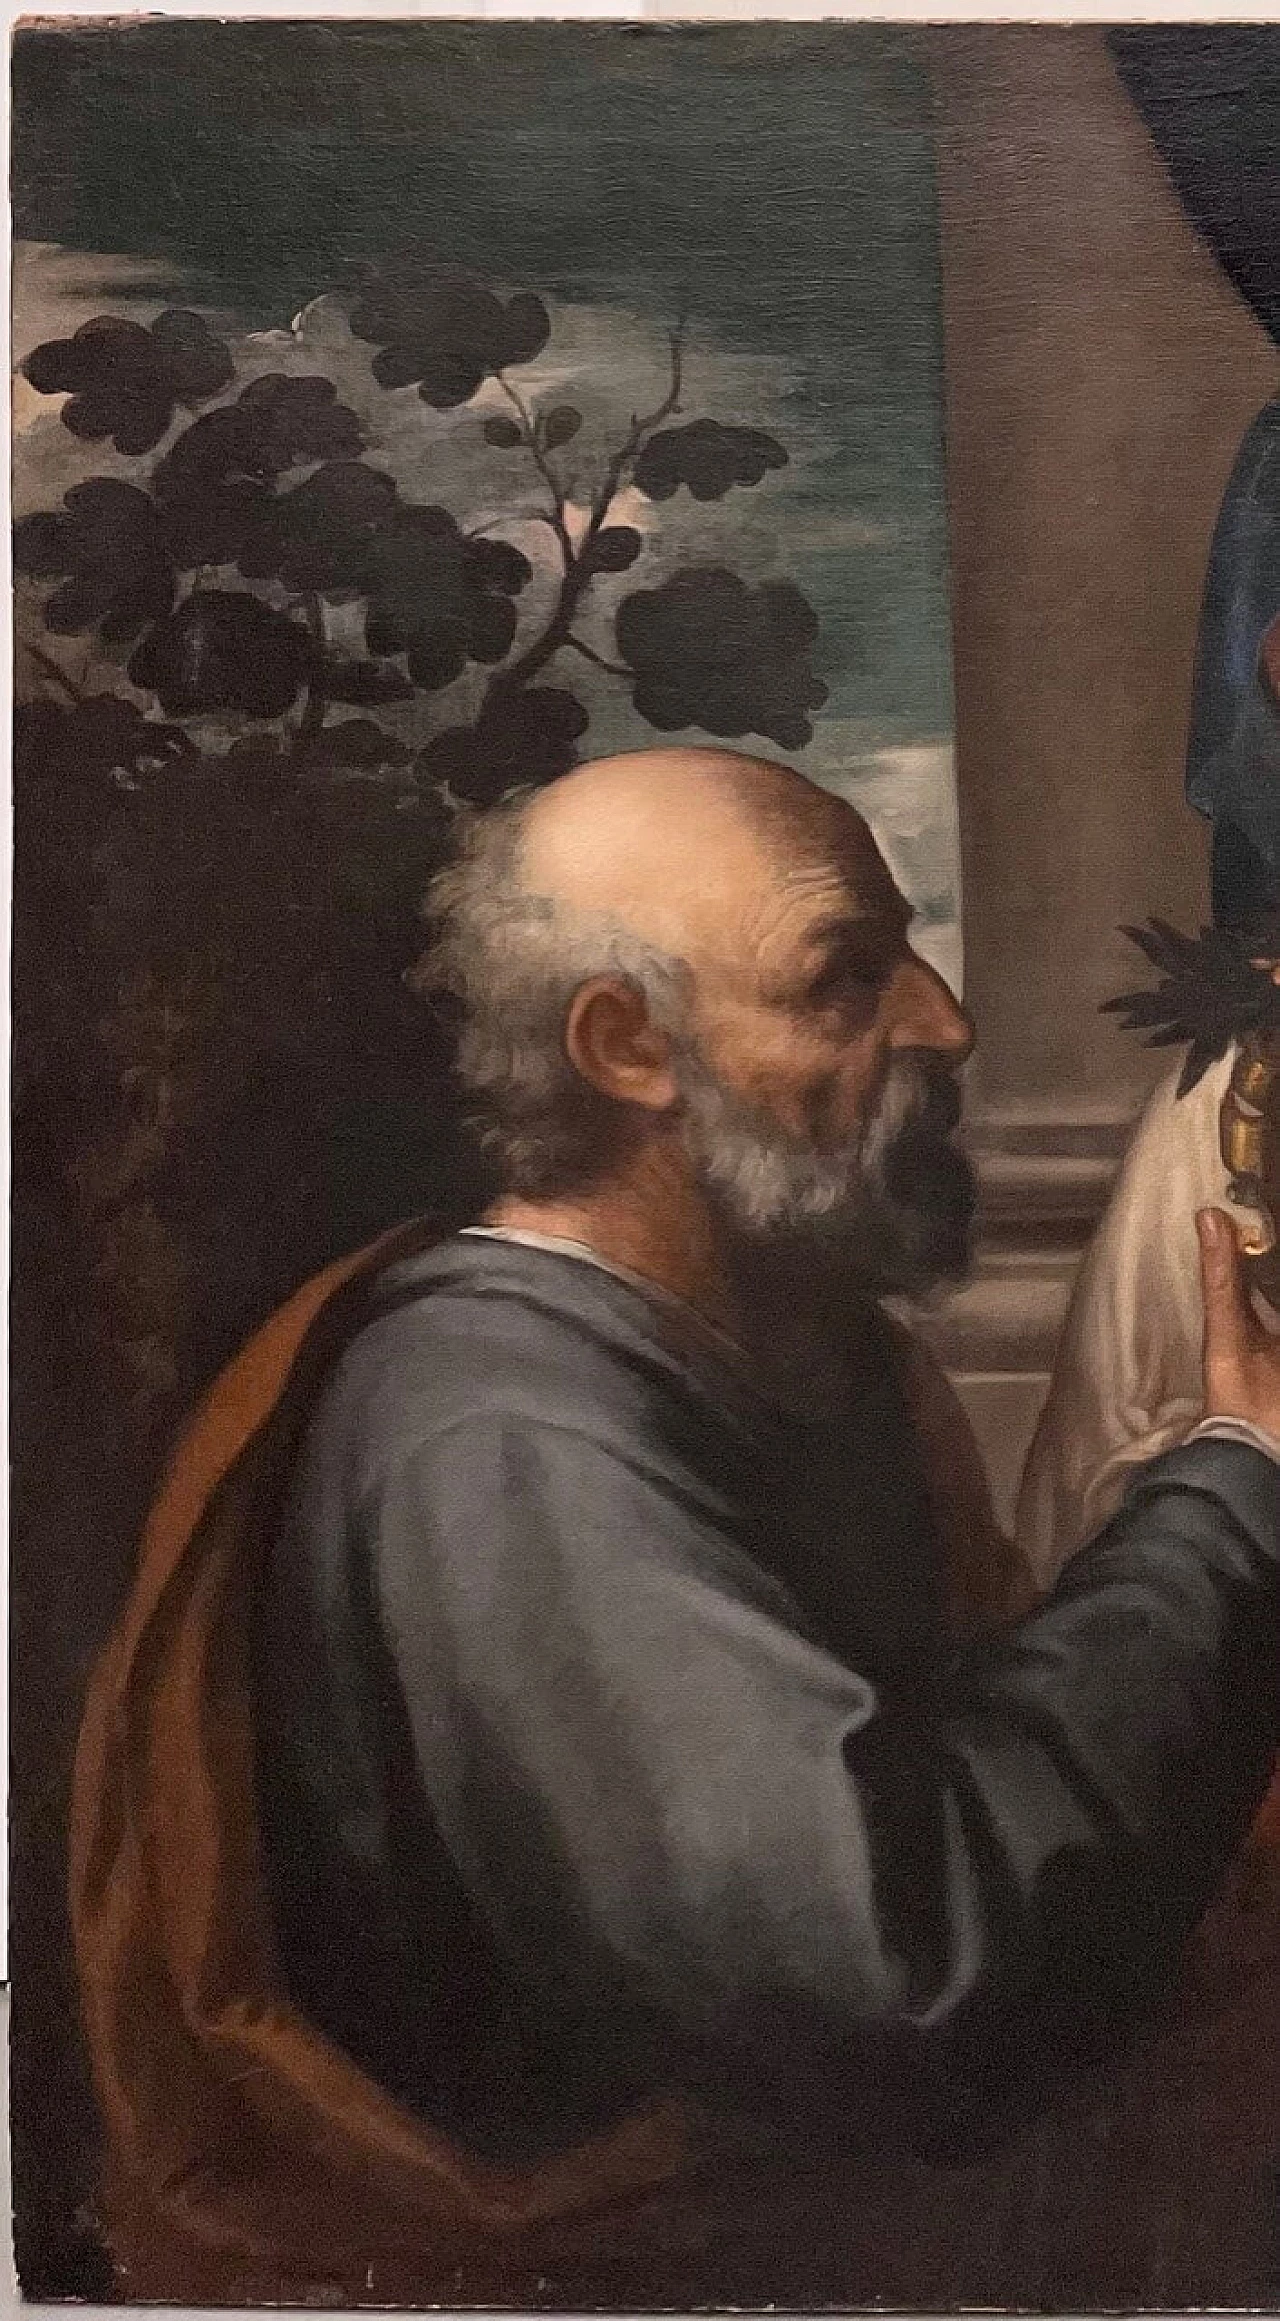 Dipinto Sacra Famiglia con stemma nobiliare alla maniera di Tiziano Vecellio, '500 1473325